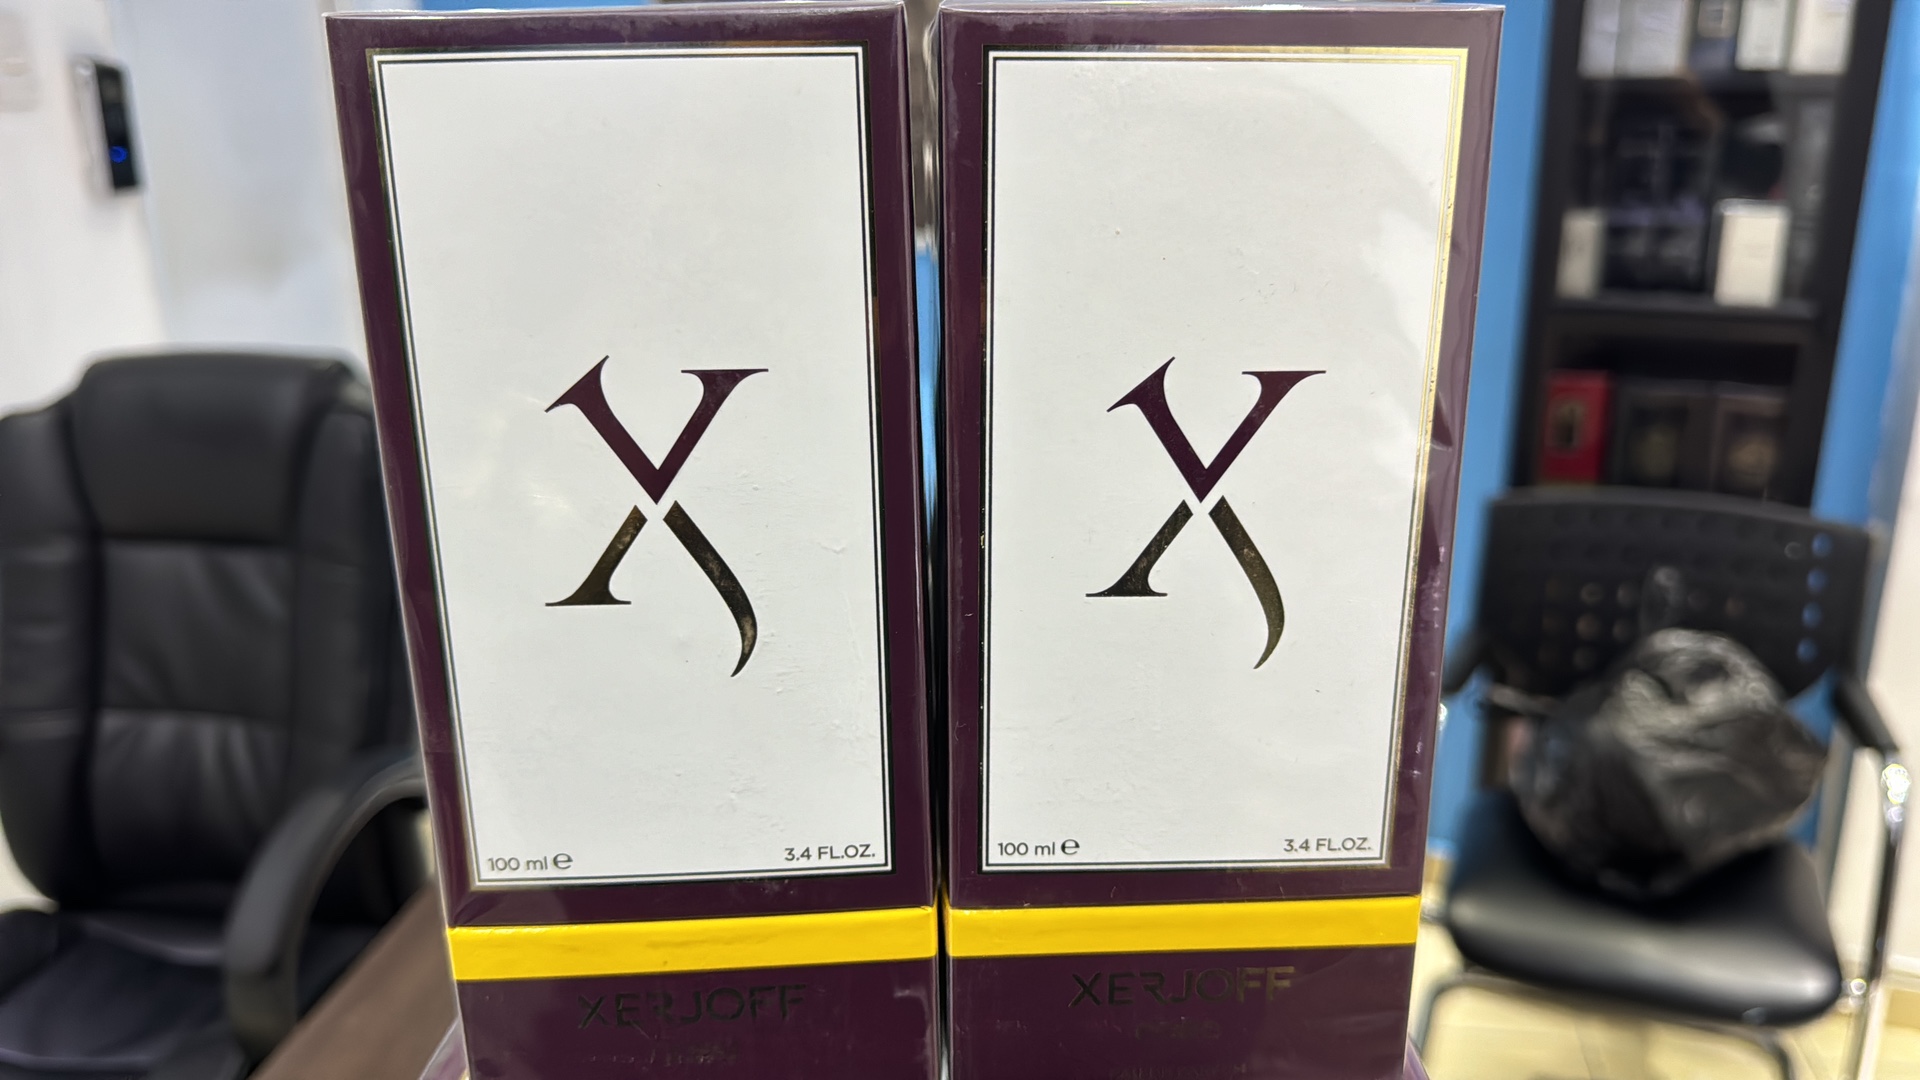 joyas, relojes y accesorios - Vendo Perfumes Xerjoff CORO 100ML - Nuevos a Originales RD$ 13,500 NEG 0